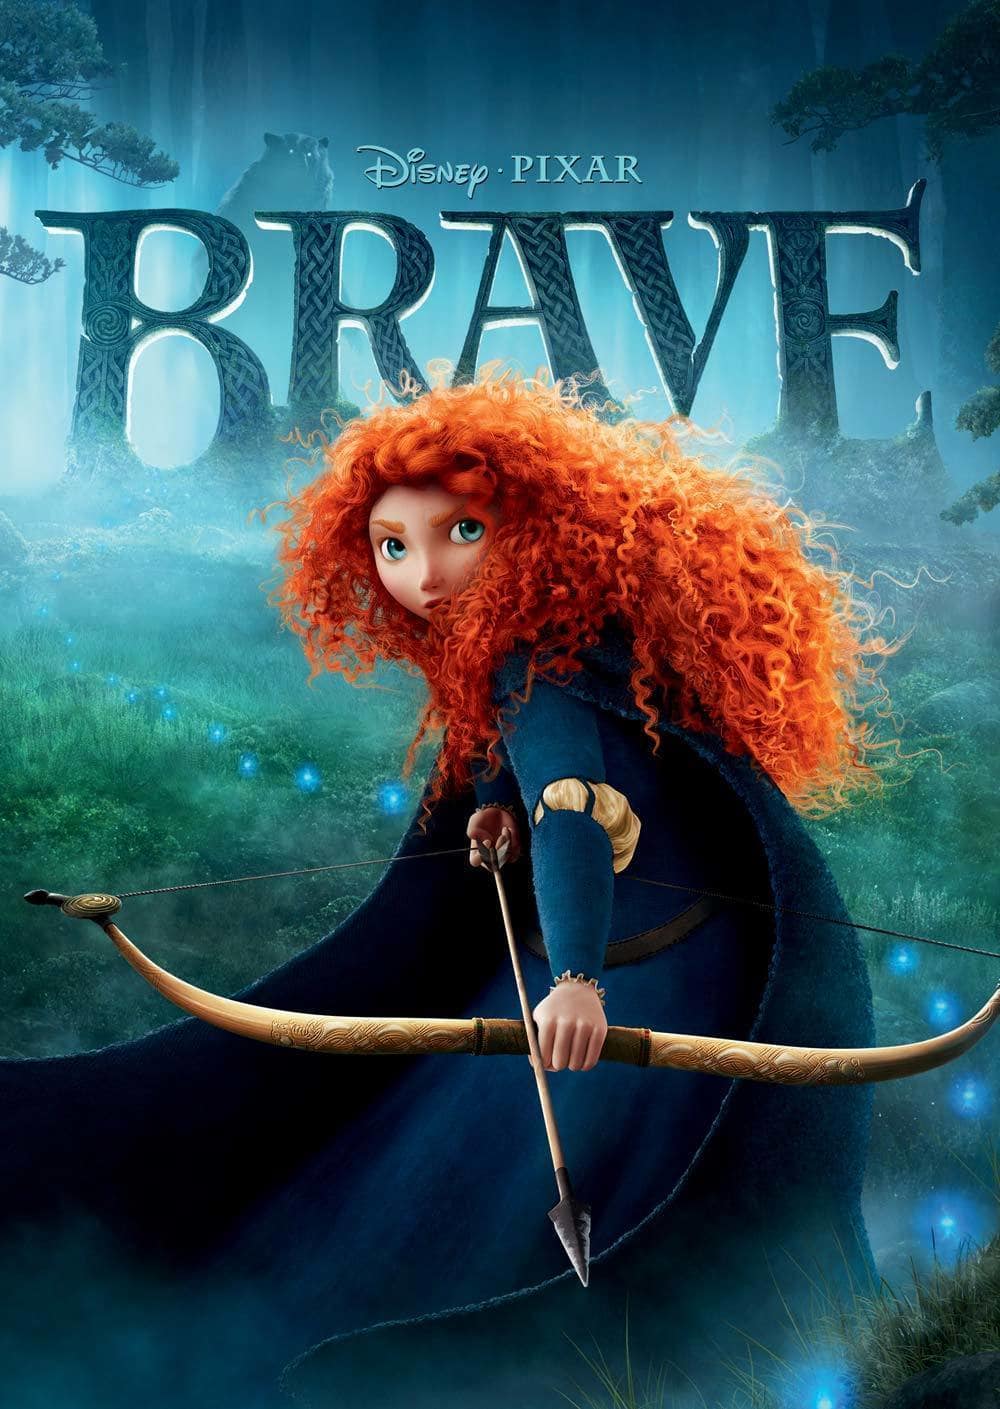 Disney Pixar Brave Logo - Disney•Pixar Brave: The Video Game | Disney LOL